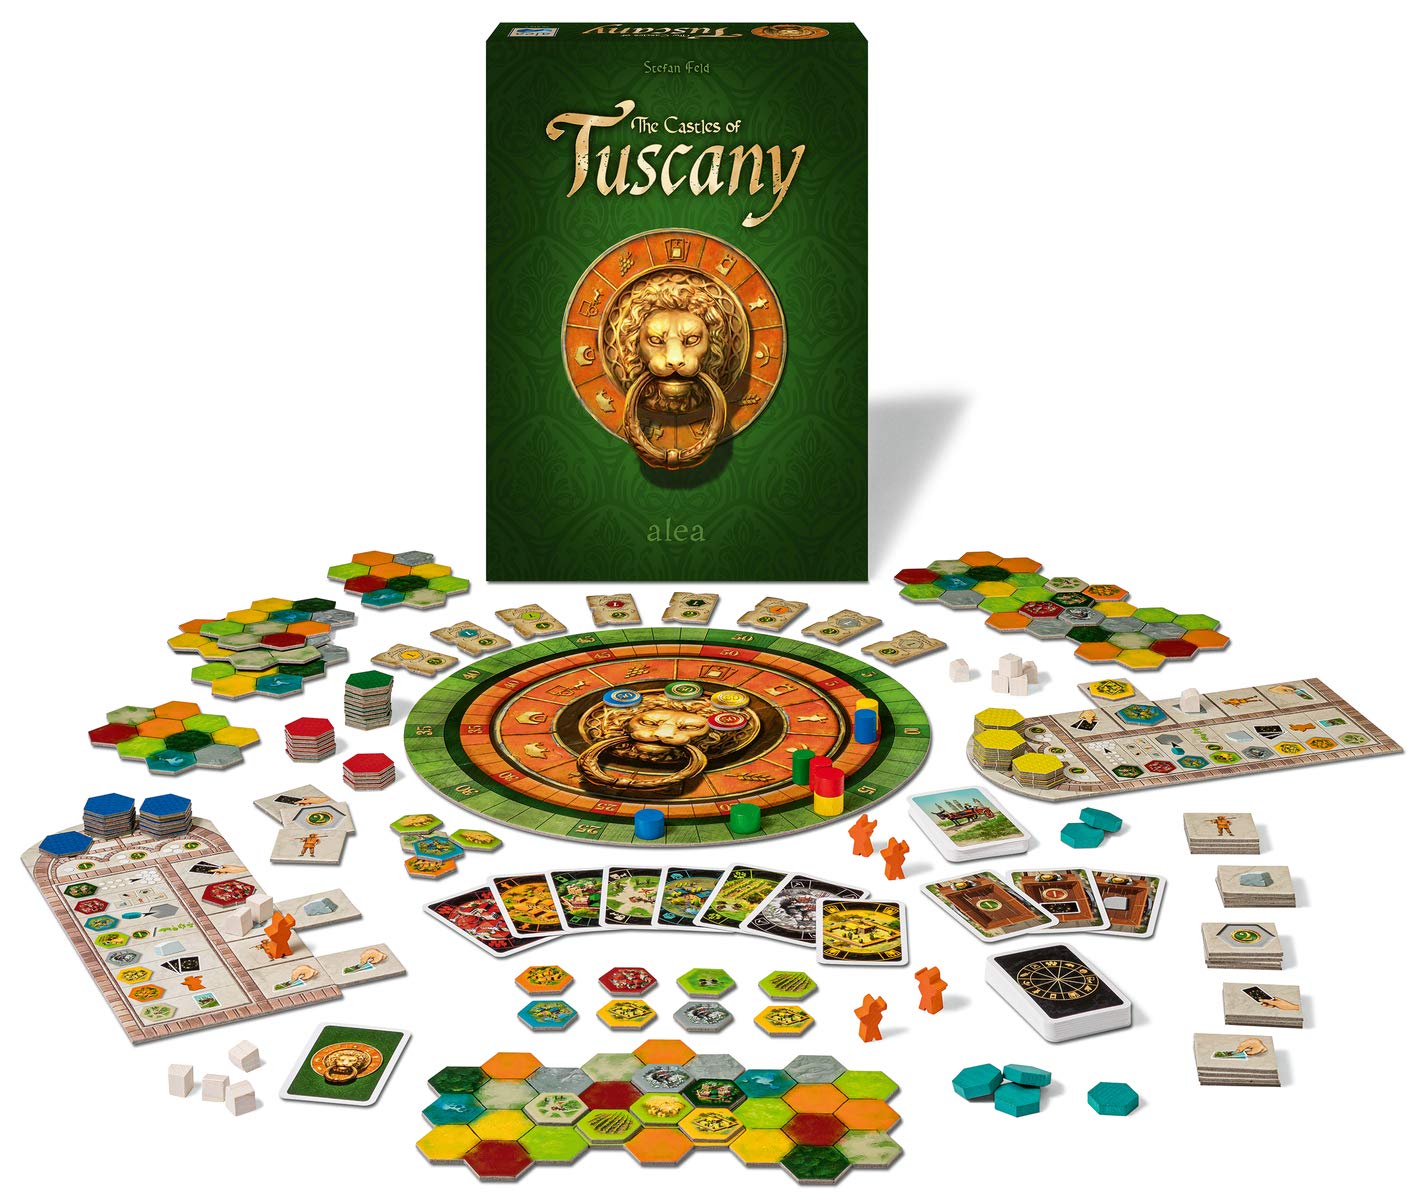 Ravensburger 26916 - The Castles of Tuscany, Strategiespiel für 2-4 Spieler ab 10 Jahren, alea Spiele, Spielereihe